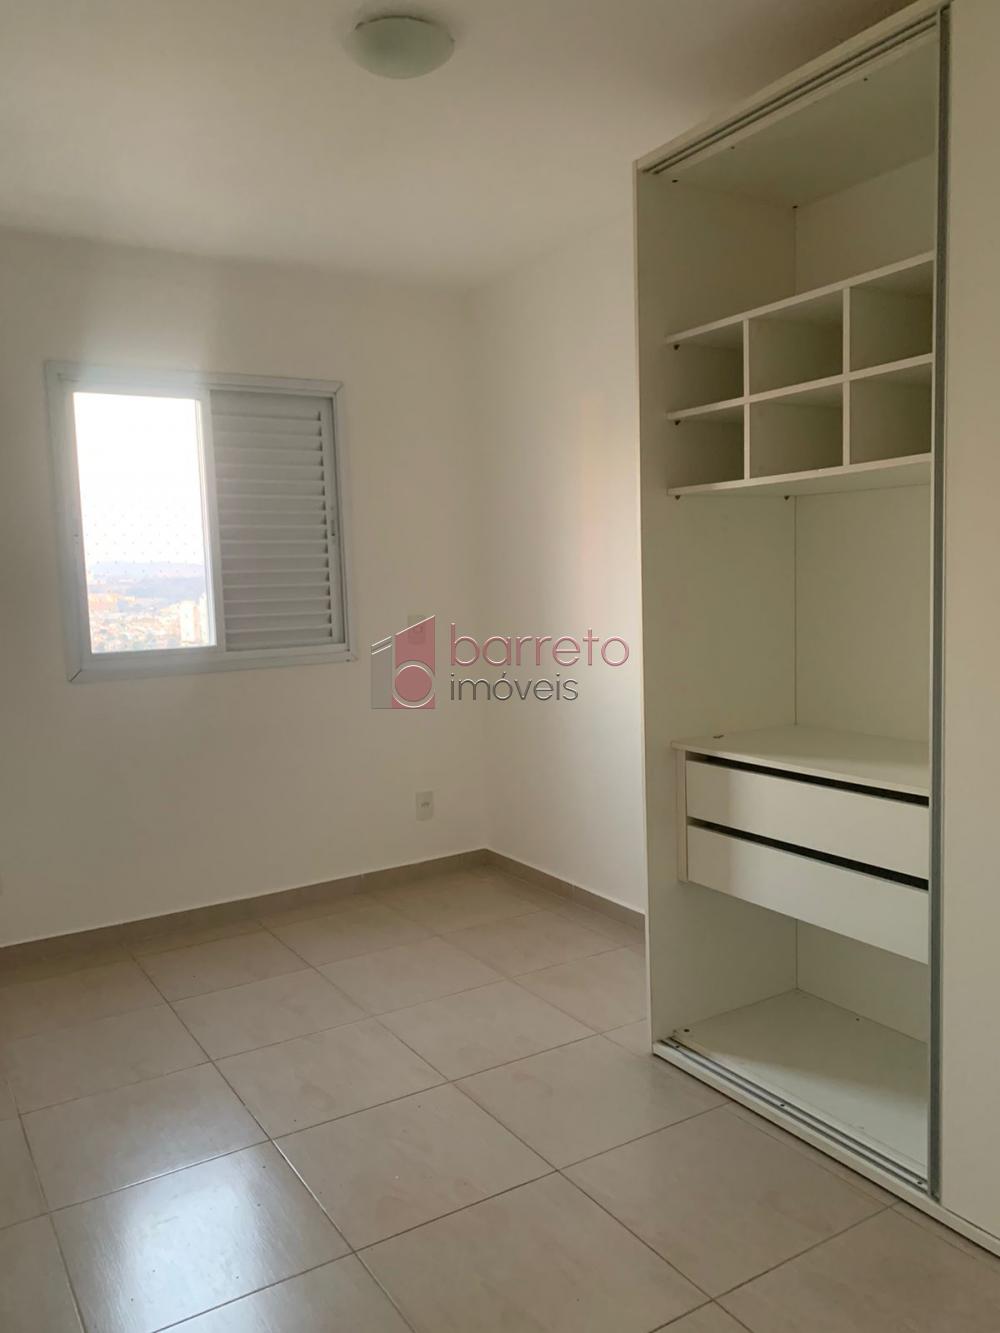 Comprar Apartamento / Cobertura em Jundiaí R$ 1.700.000,00 - Foto 8